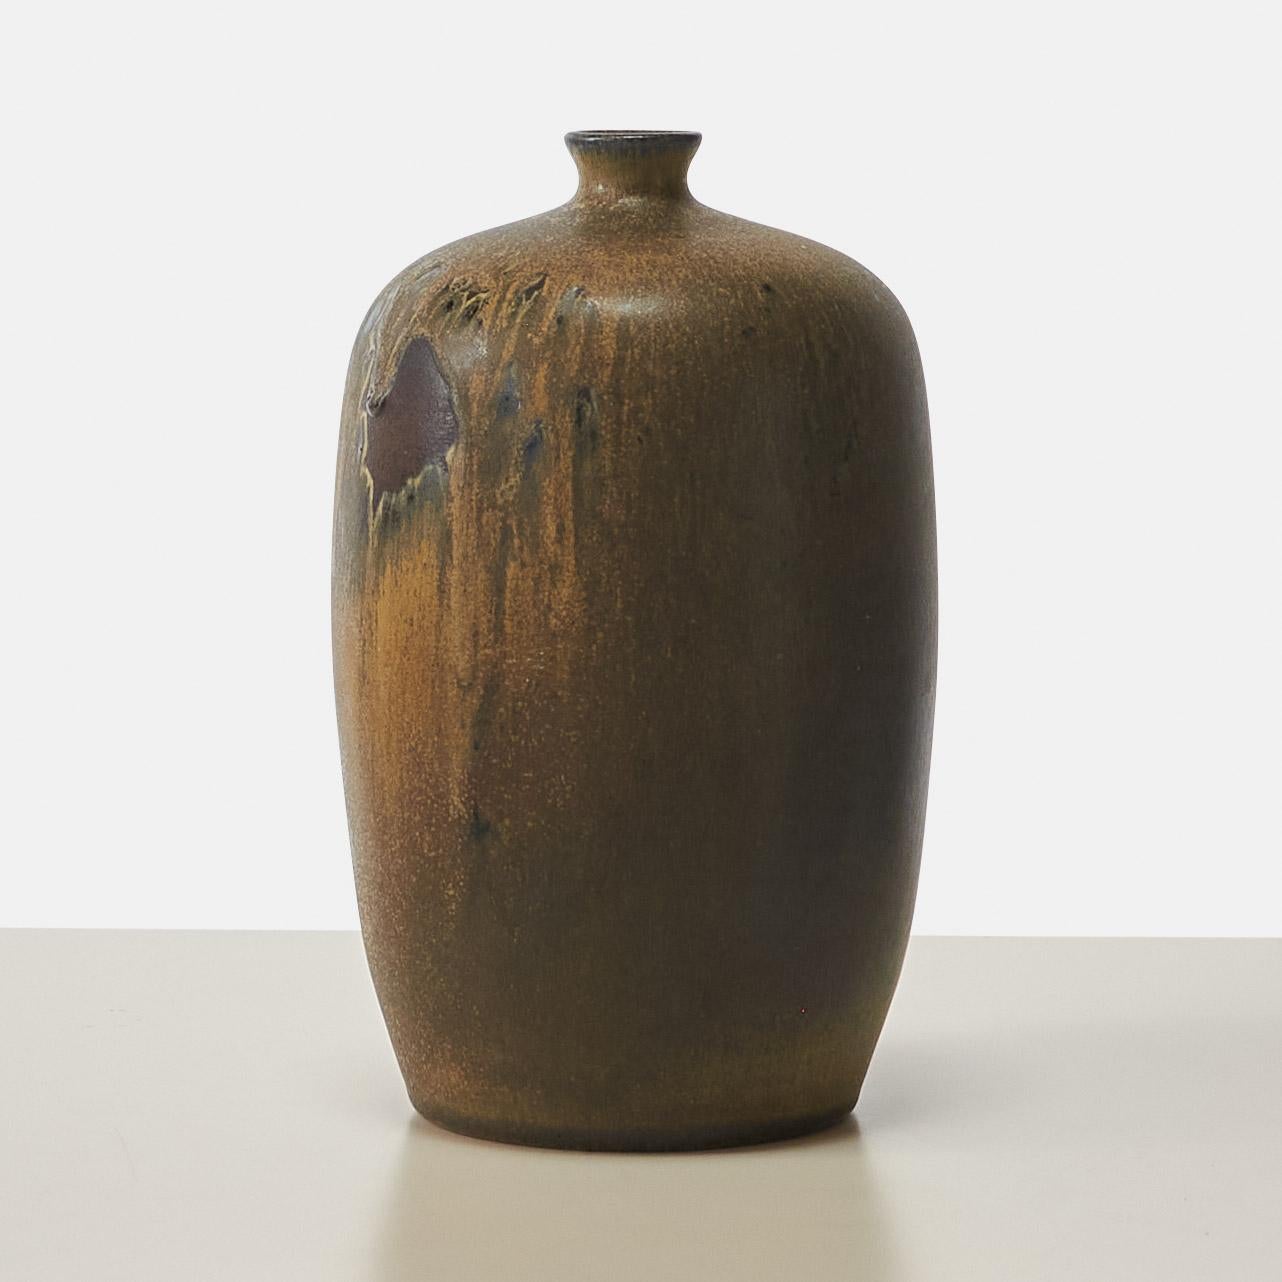 Un vase ovoïde en grès émaillé brun à bouche étroite du céramiste suédois Åke Holm. 
Signé sur la base.